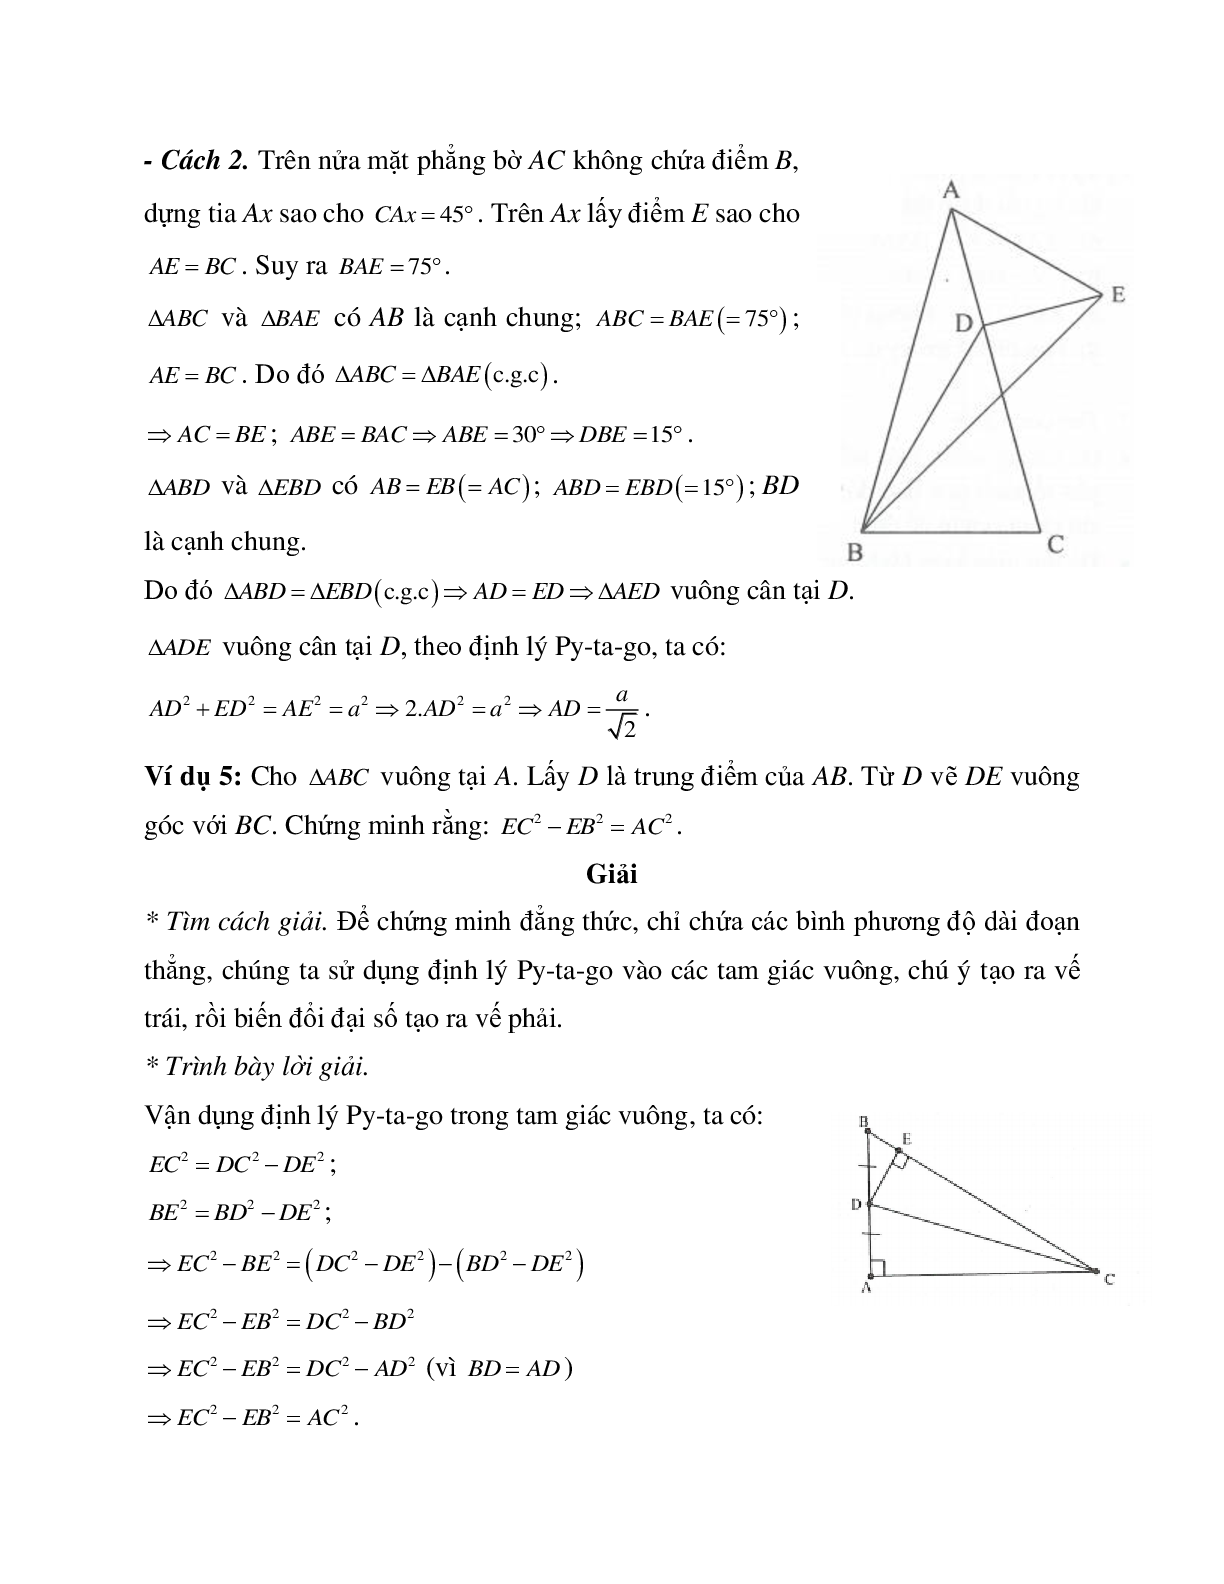 Những bài tập điển hình về Định lý Pi-ta-go trong tam giác vuông có lời giải (trang 5)